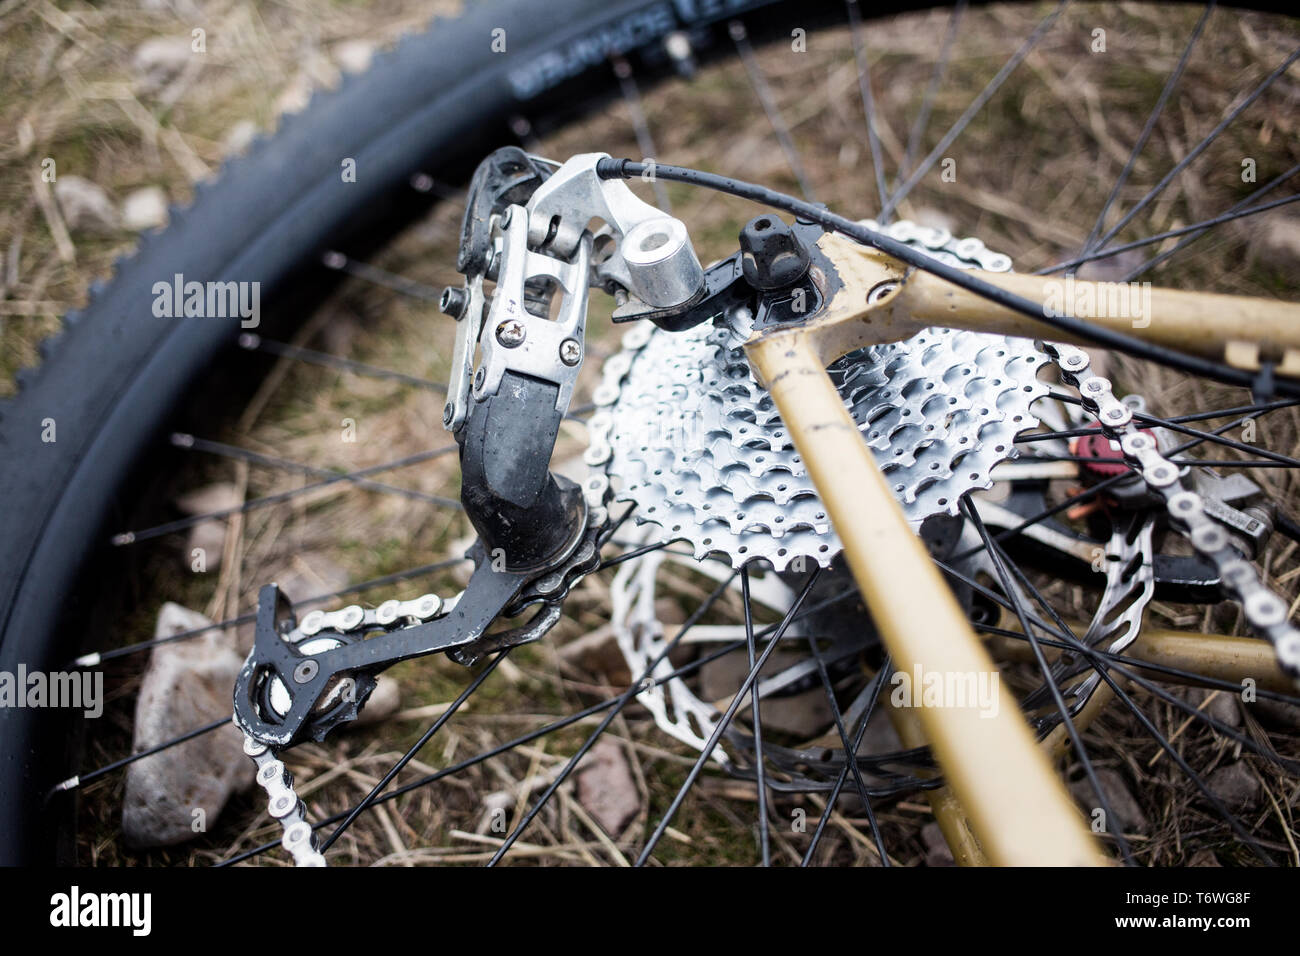 Un'immagine dettagliata di una mountain bike ruota posteriore e il deragliatore posteriore. Foto Stock